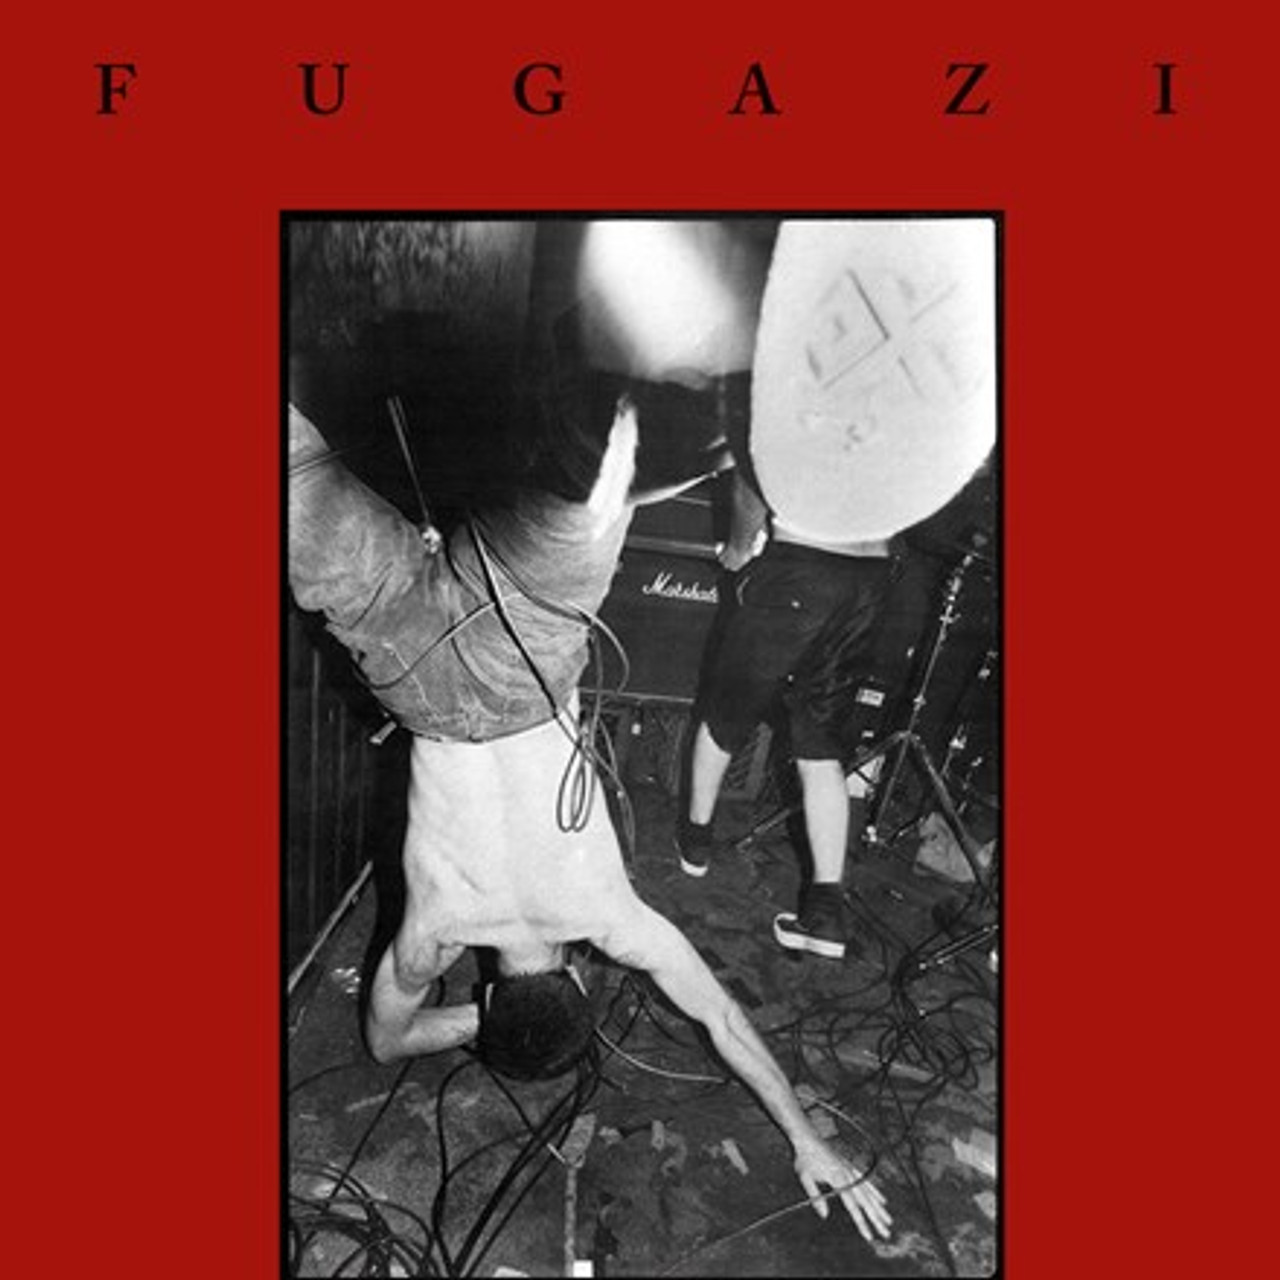 Fugazi - Fugazi (Vinyl Music Direct - LP)